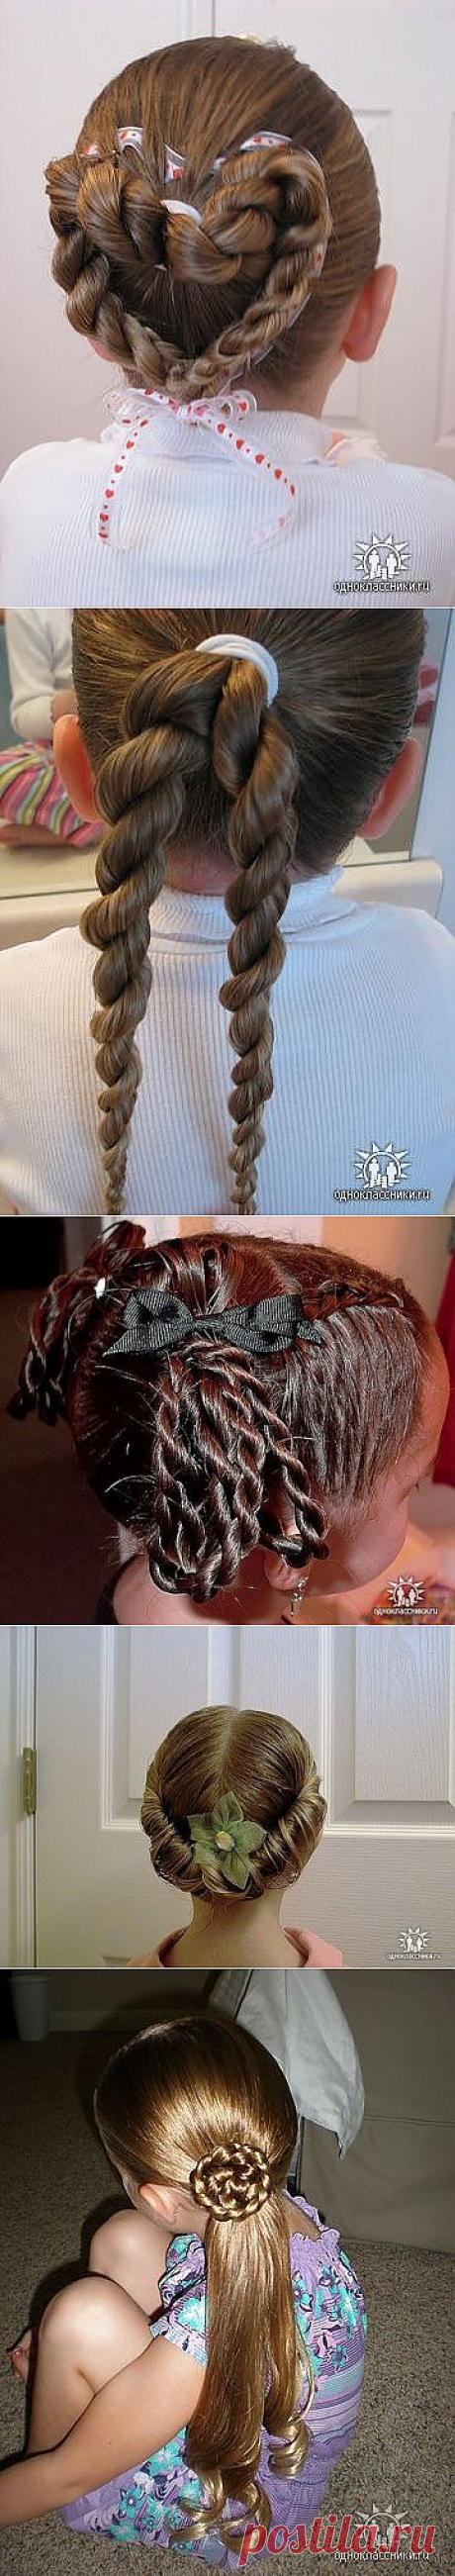 Королевские причёски для девочек (подробные фото-инструкции).